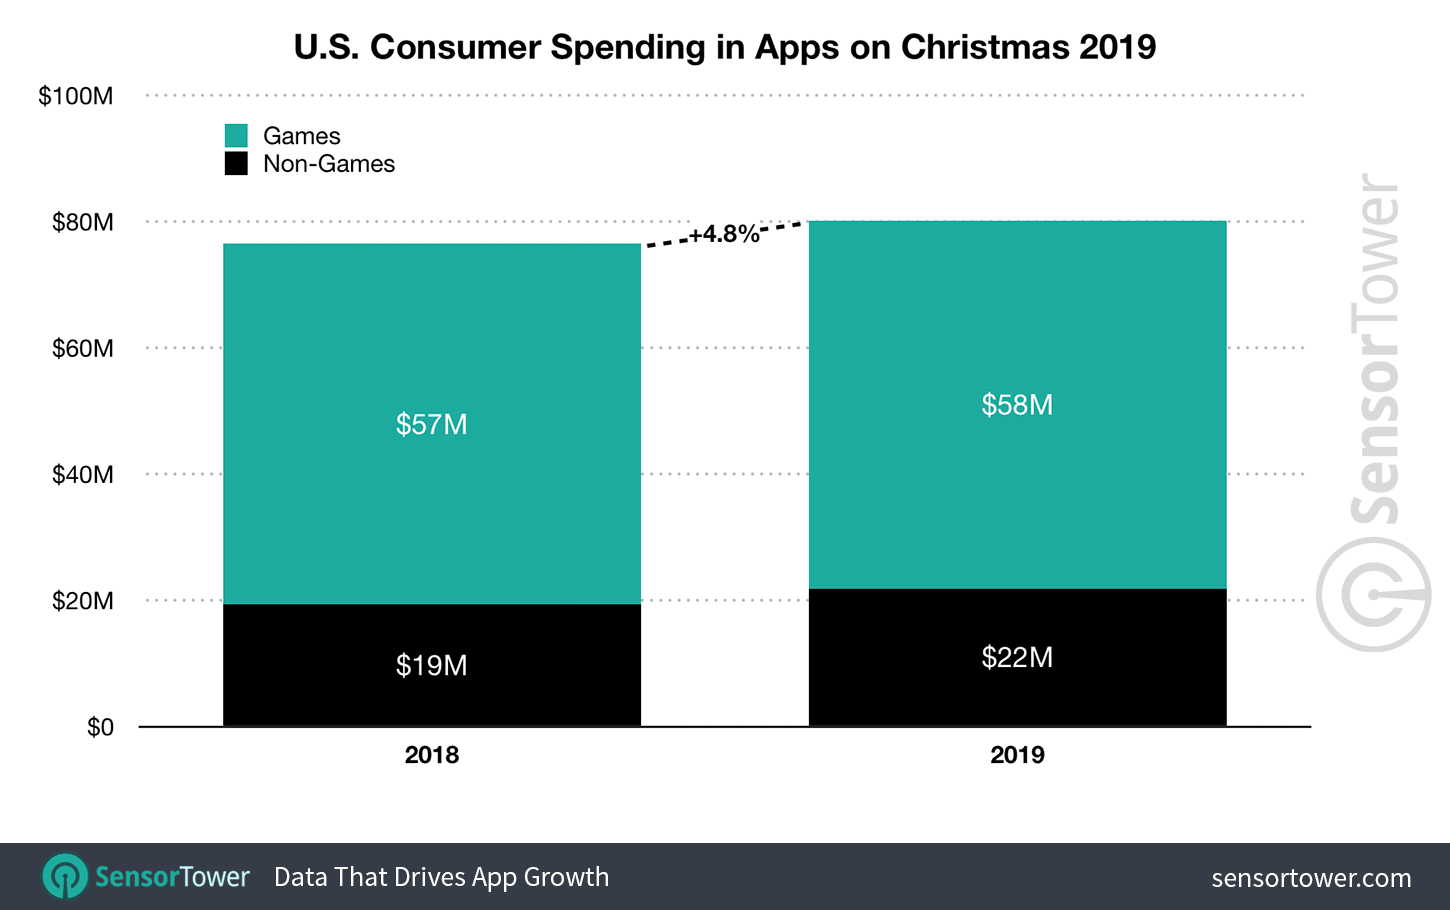 U.S. App Revenue for Christmas 2018 and 2019